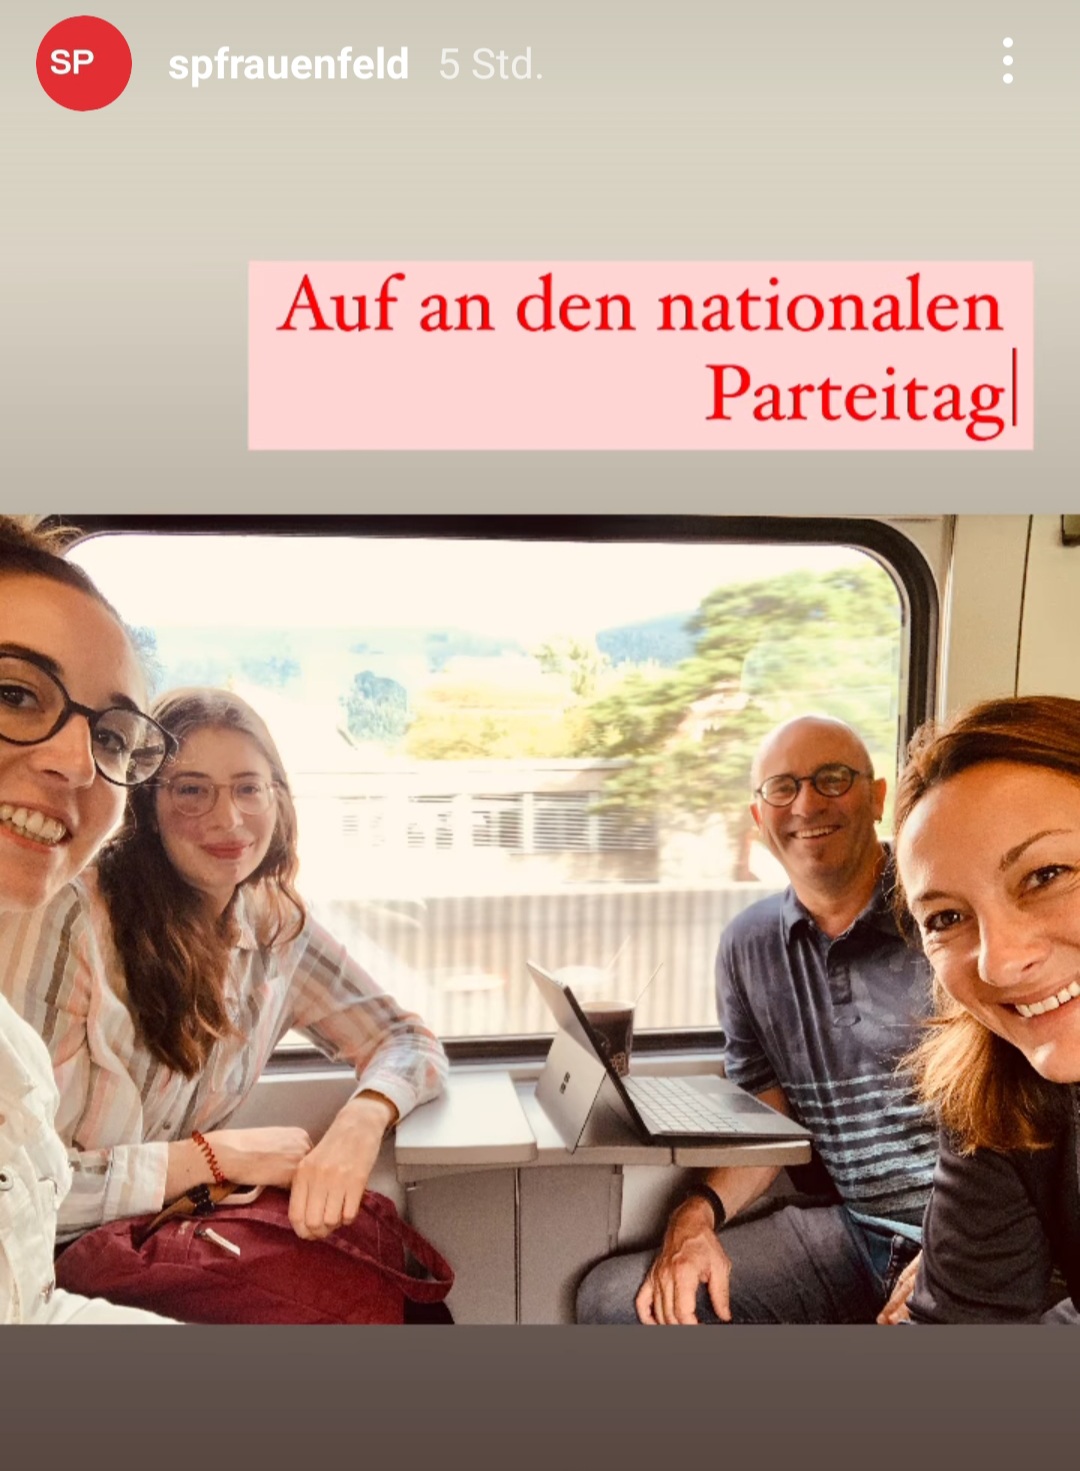 Auf dem Weg nach Biel an den Parteitag der SP Schweiz - danke SP Frauenfeld für diesen gelungenen Post